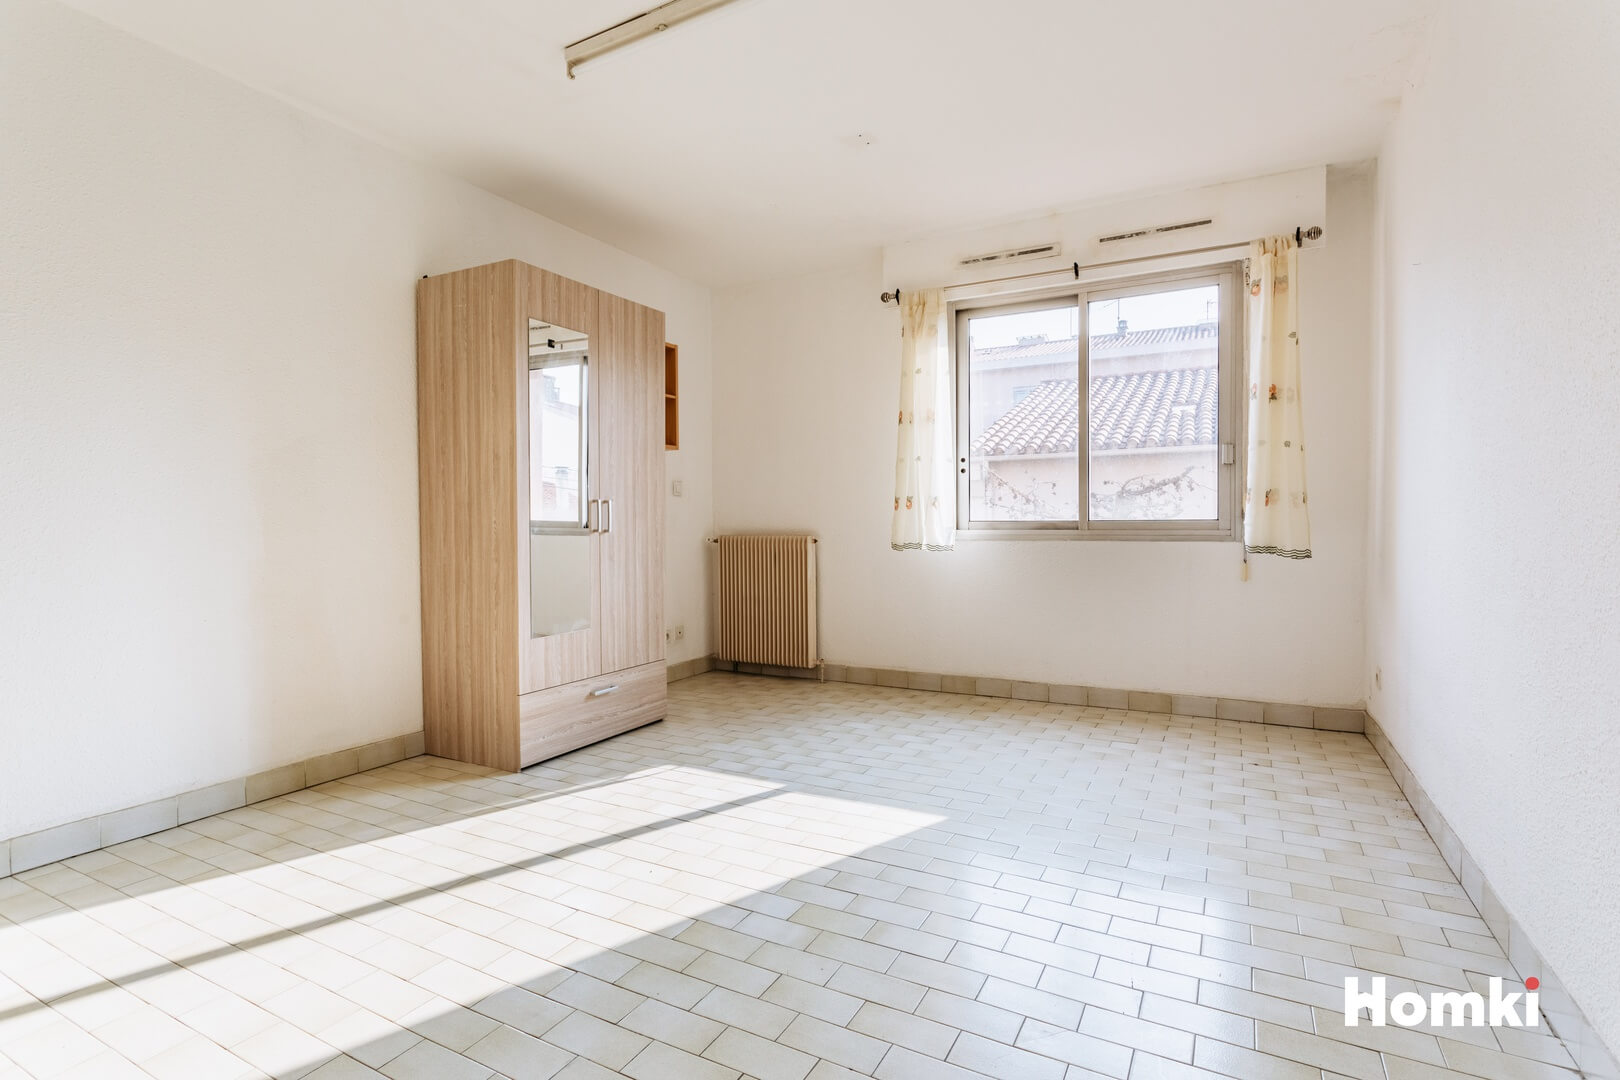 Homki - Vente Appartement  de 24.0 m² à Perpignan 66000